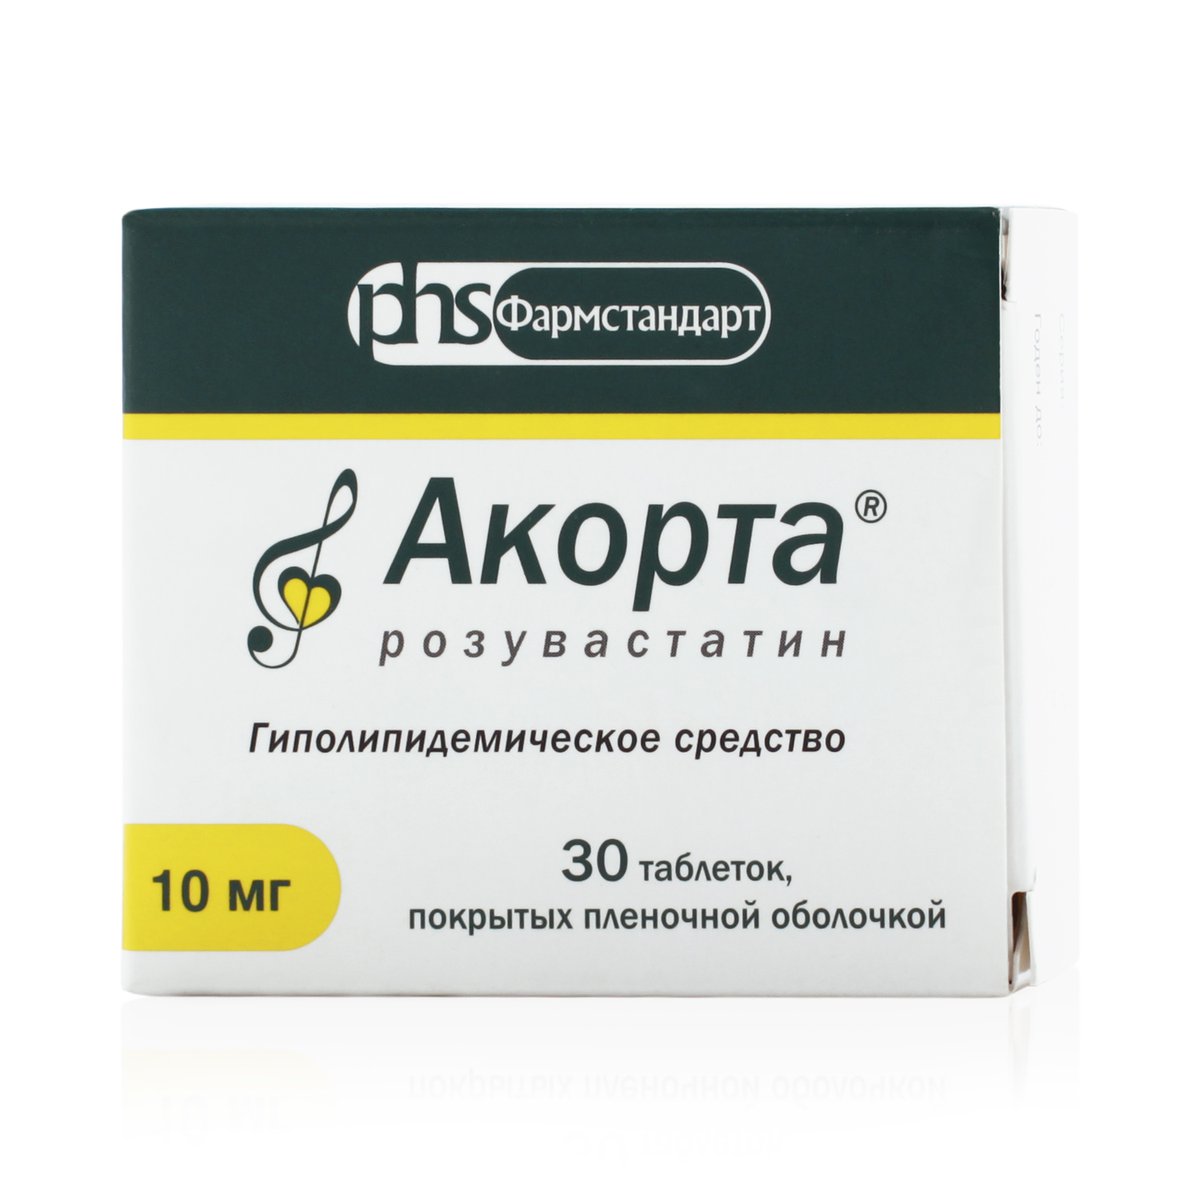 Акорта розувастатин (таблетки, 30 шт, 10 мг, для приема внутрь) - цена .